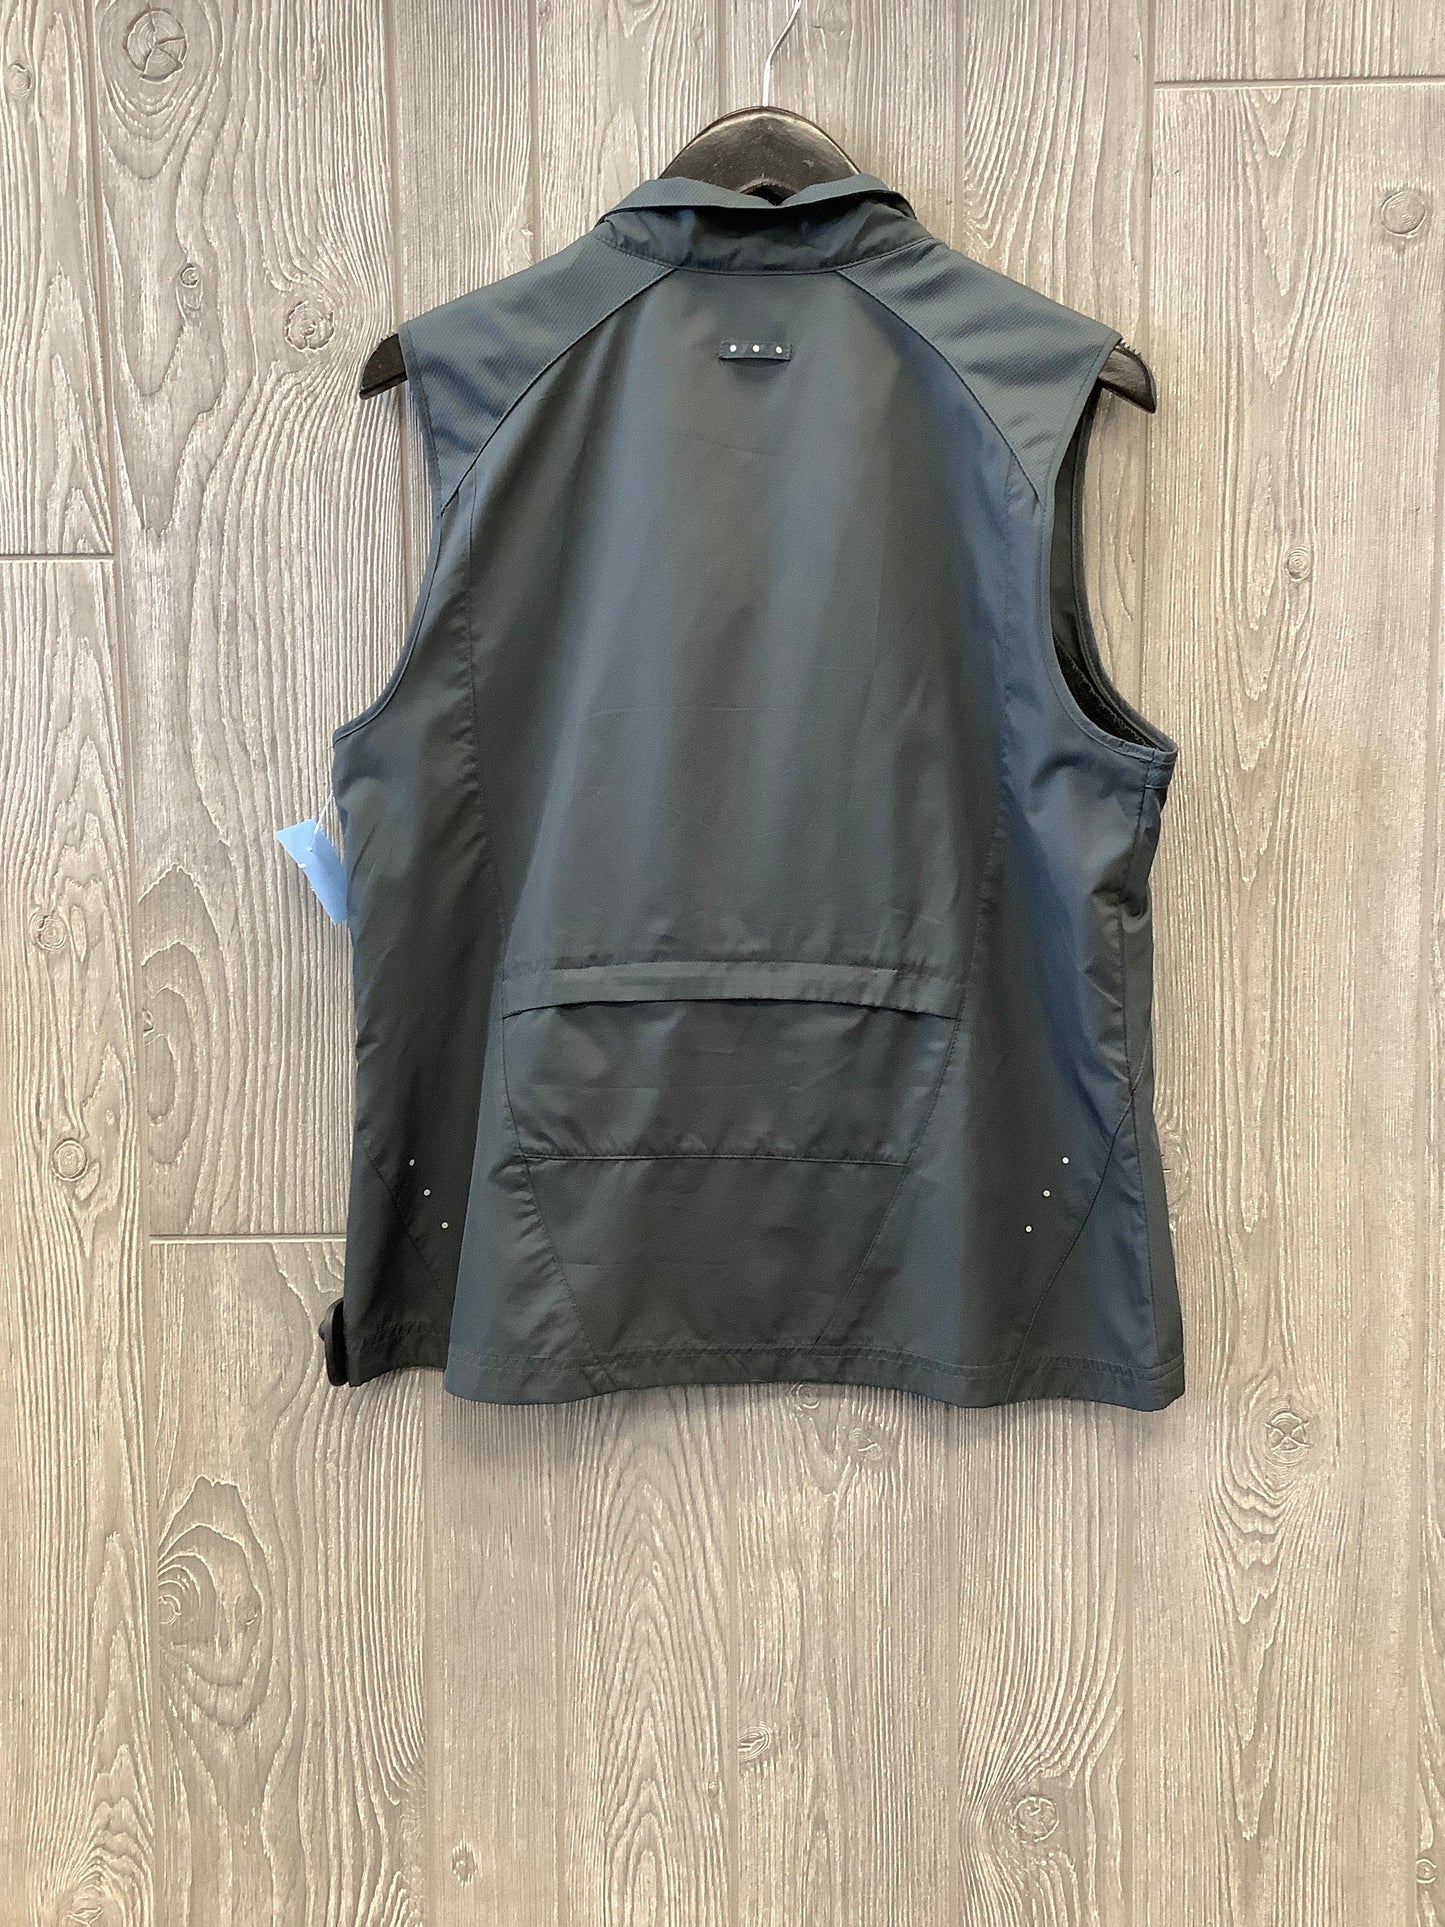 Athletic Jacket By Danskin  Size: L